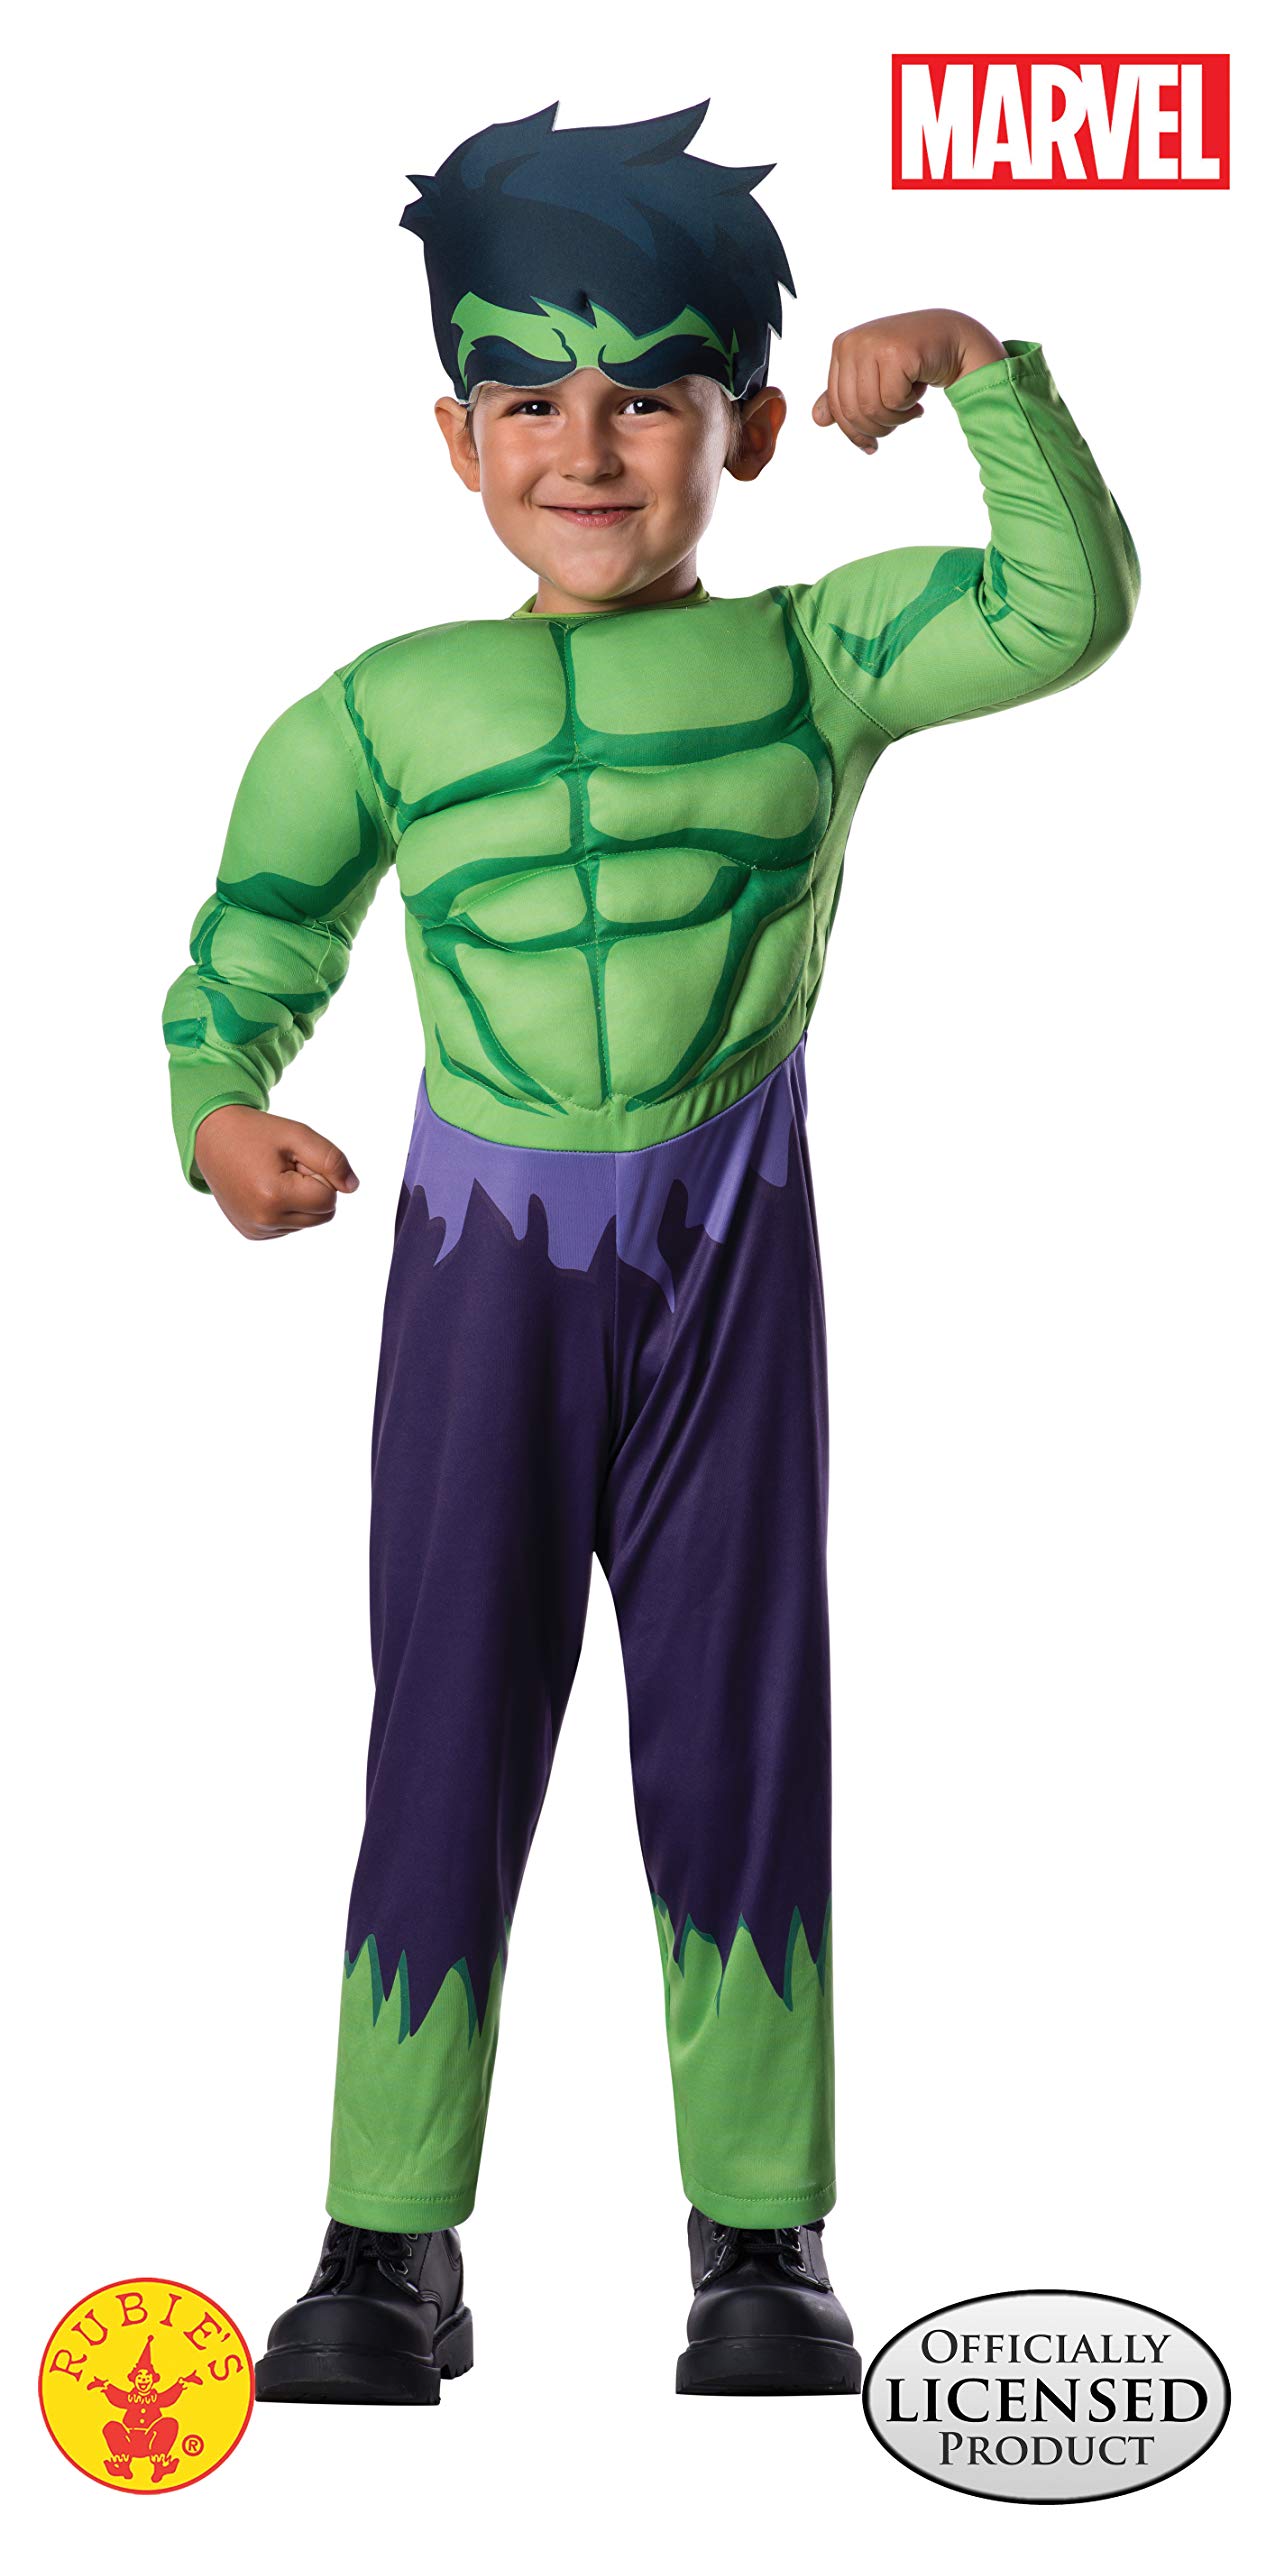 Avengers Assemble Hulk Toddler Costume for Toddler